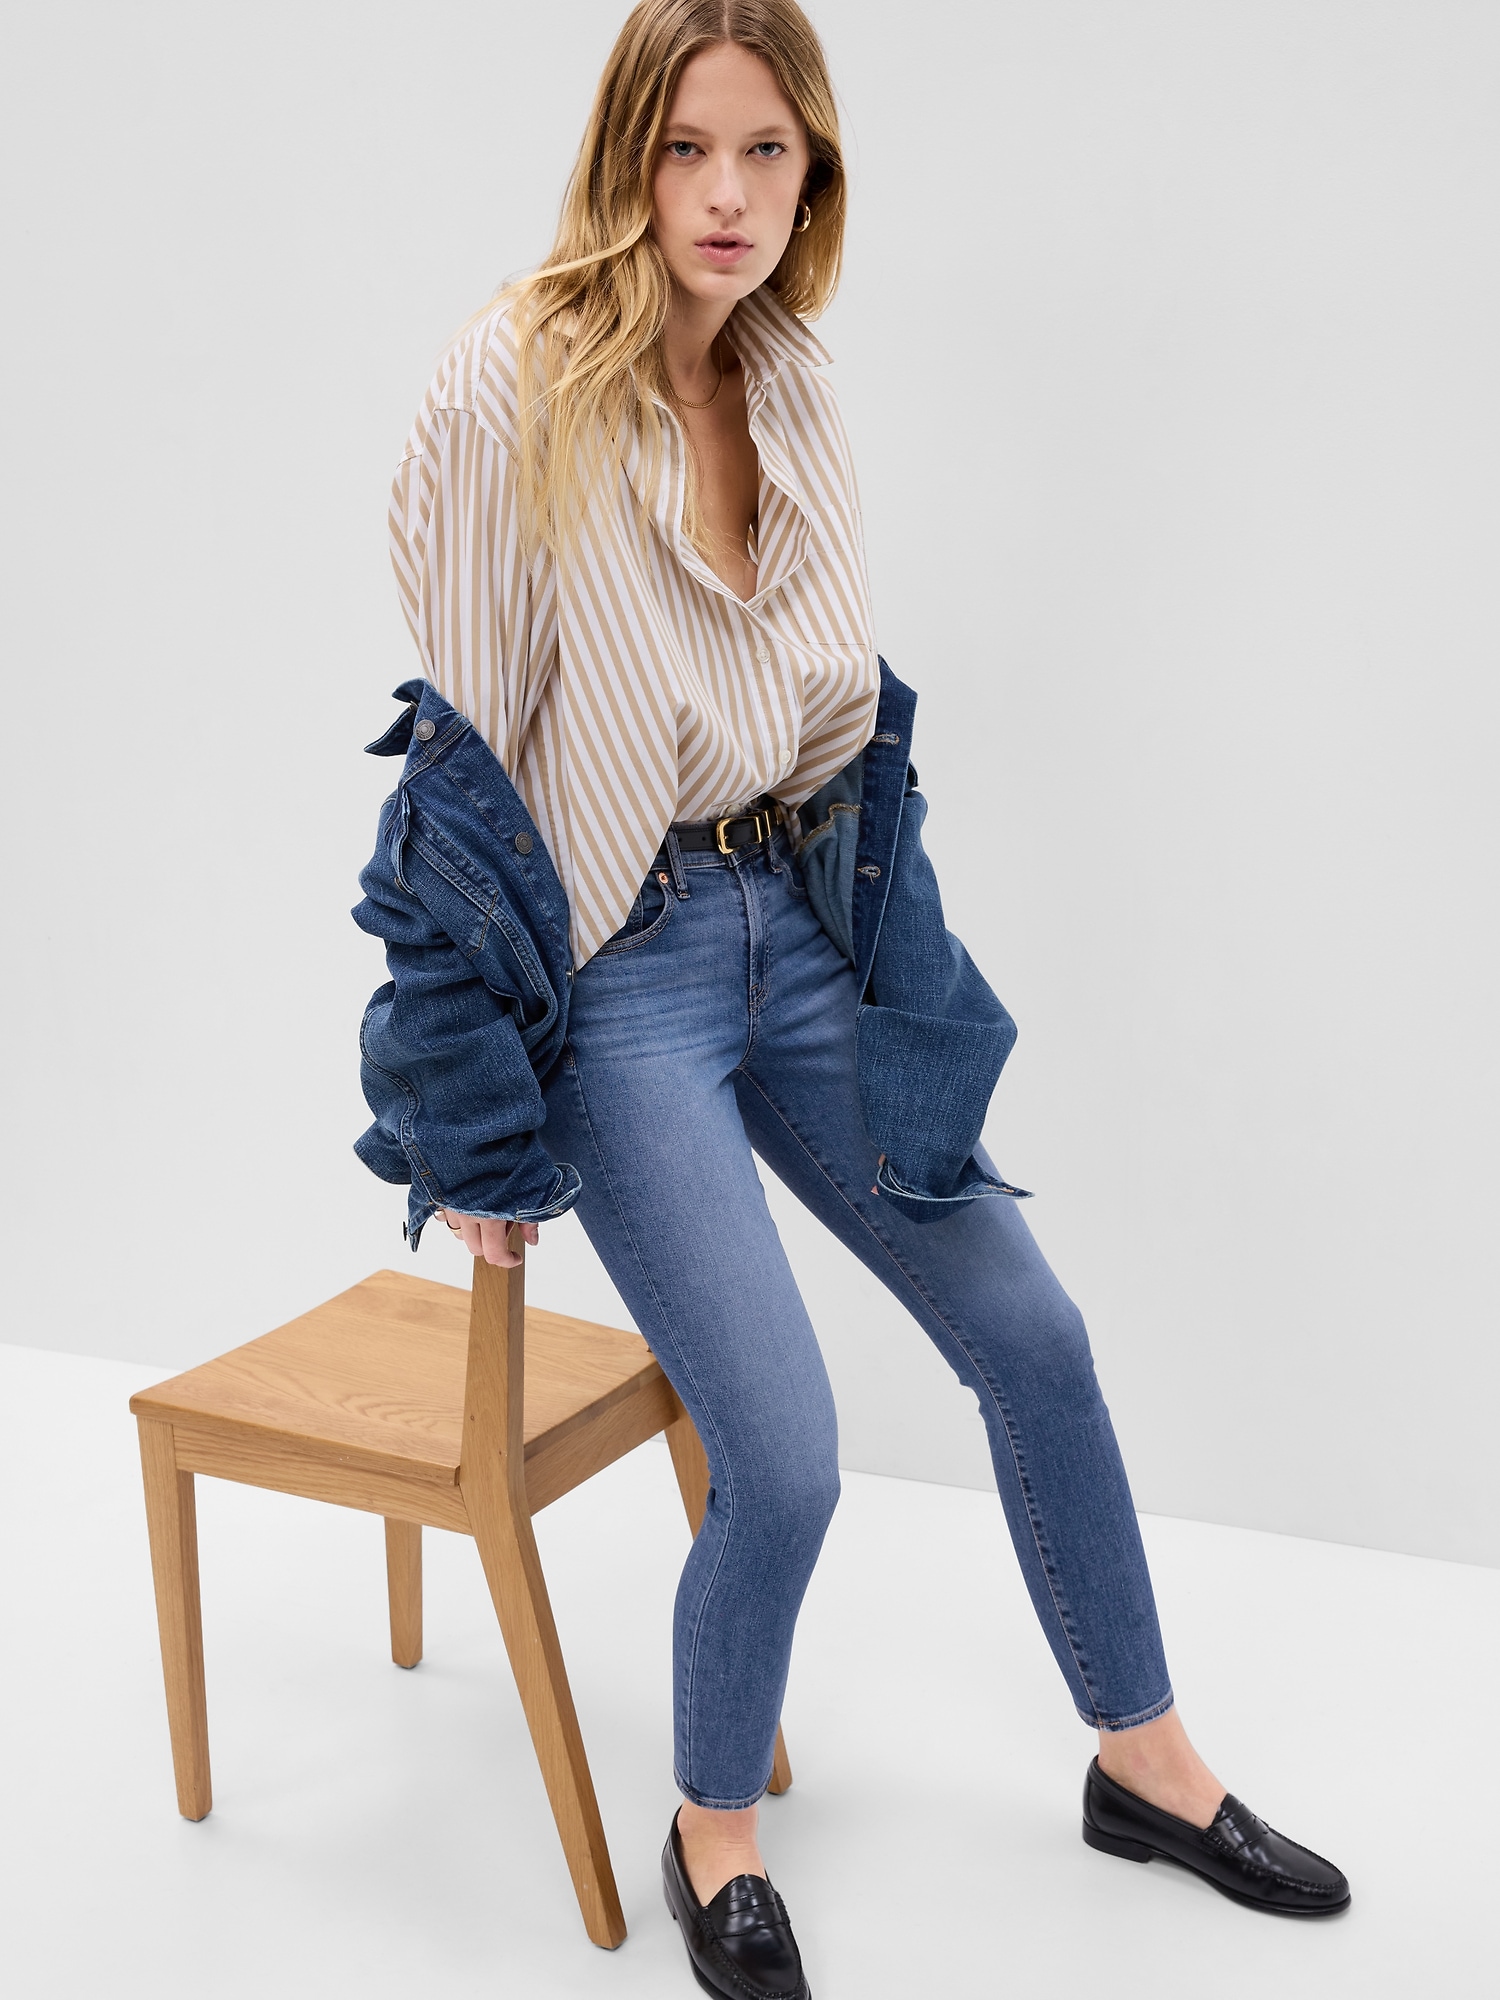 hiërarchie Bondgenoot Broek Mid Rise True Skinny Jeans with Washwell | Gap